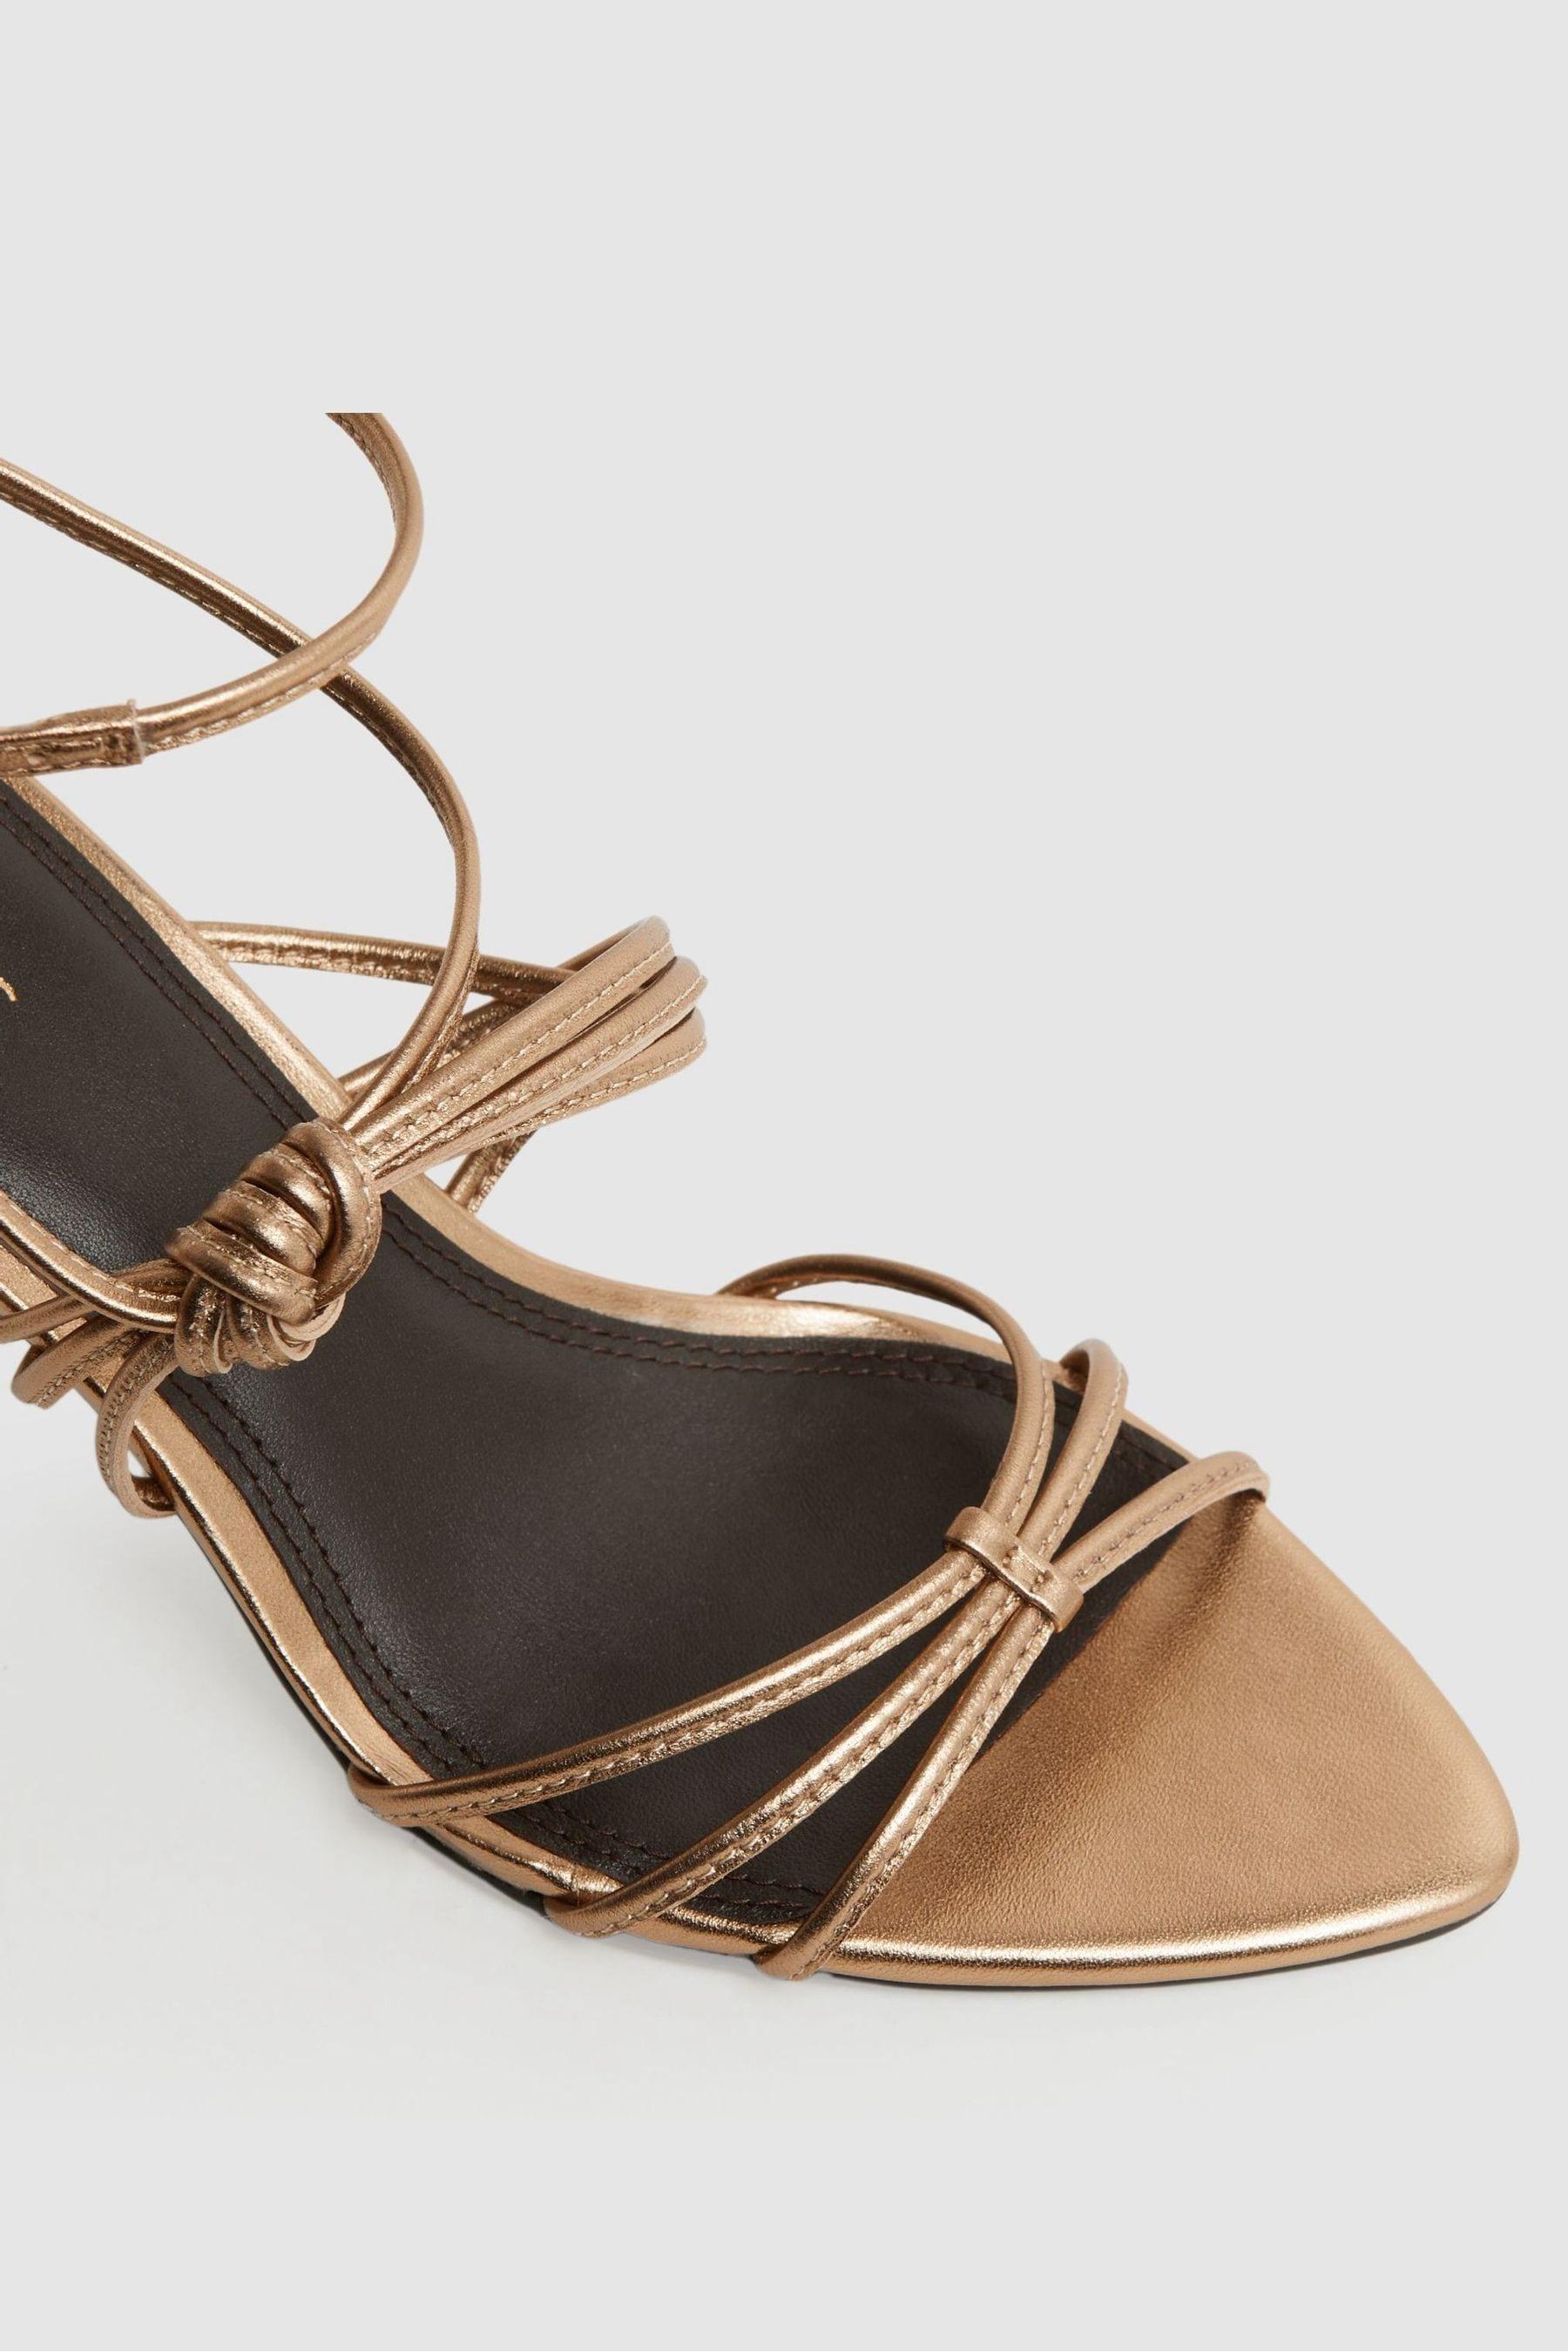 SCHUTZ New Bronze Sinuous Sandal | MELIE